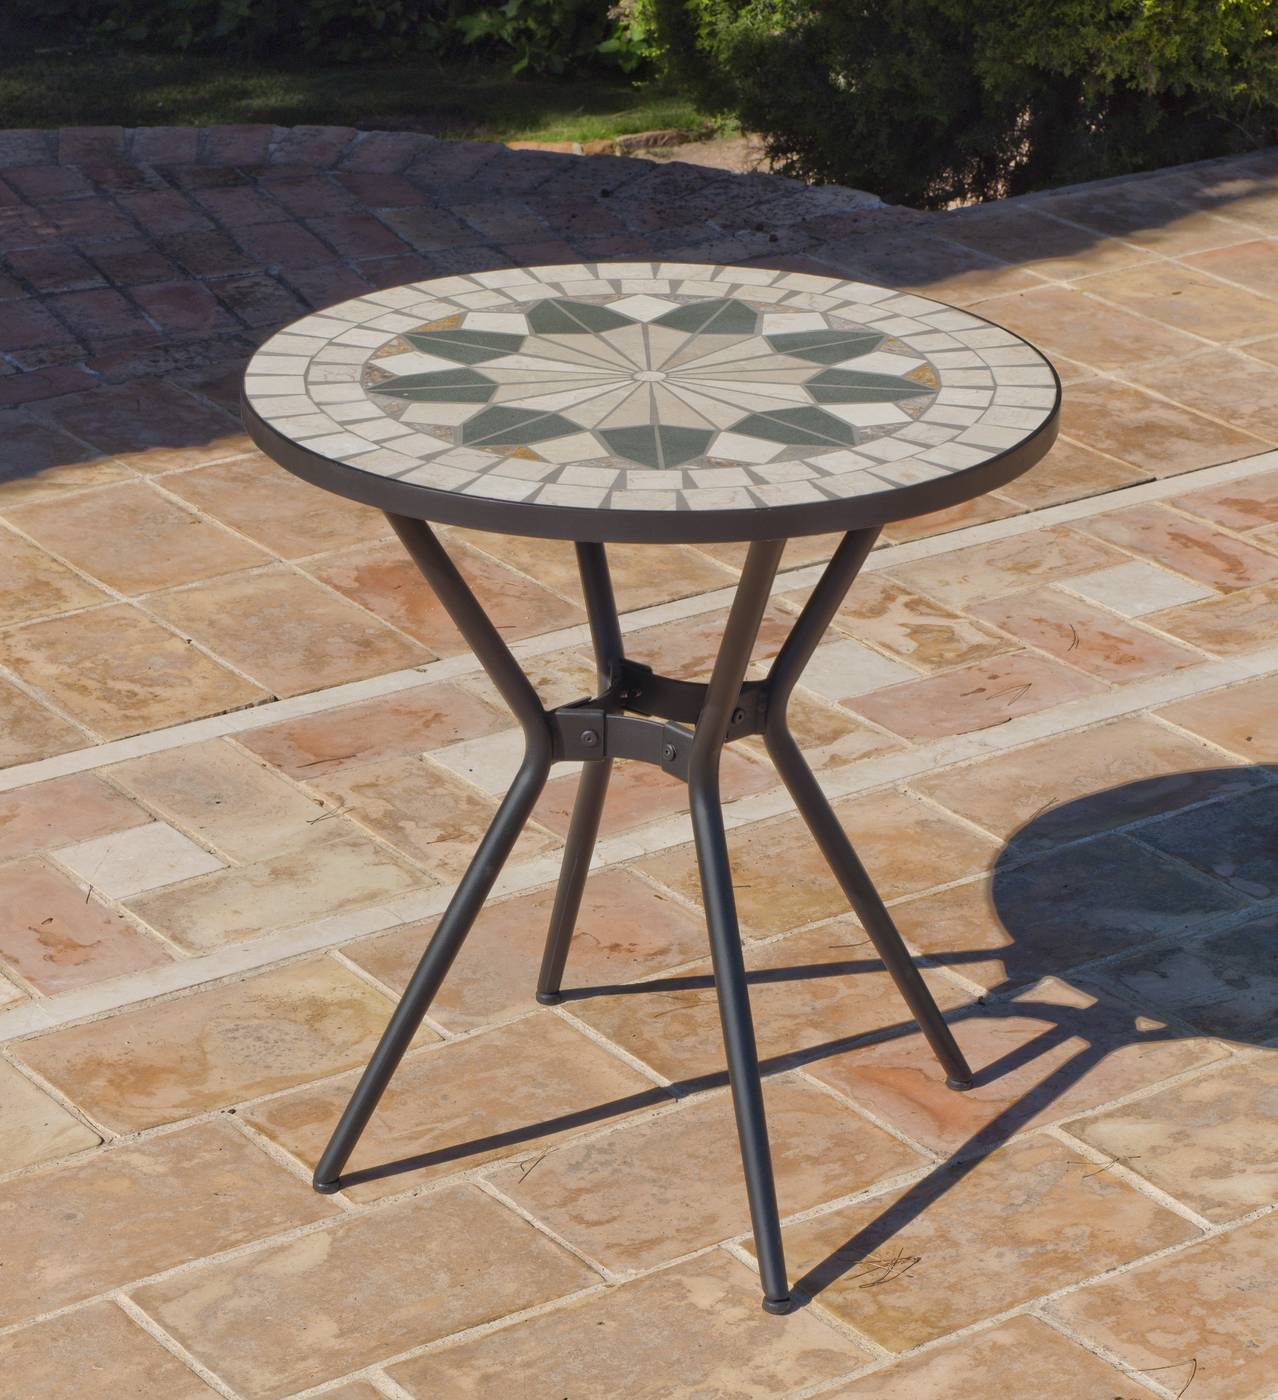 Conjunto Mosaico Shifa 70-2 - Conjunto para jardín de forja color antracita: 1 mesa con panel mosaico + 2 sillones de forja + 2 cojines